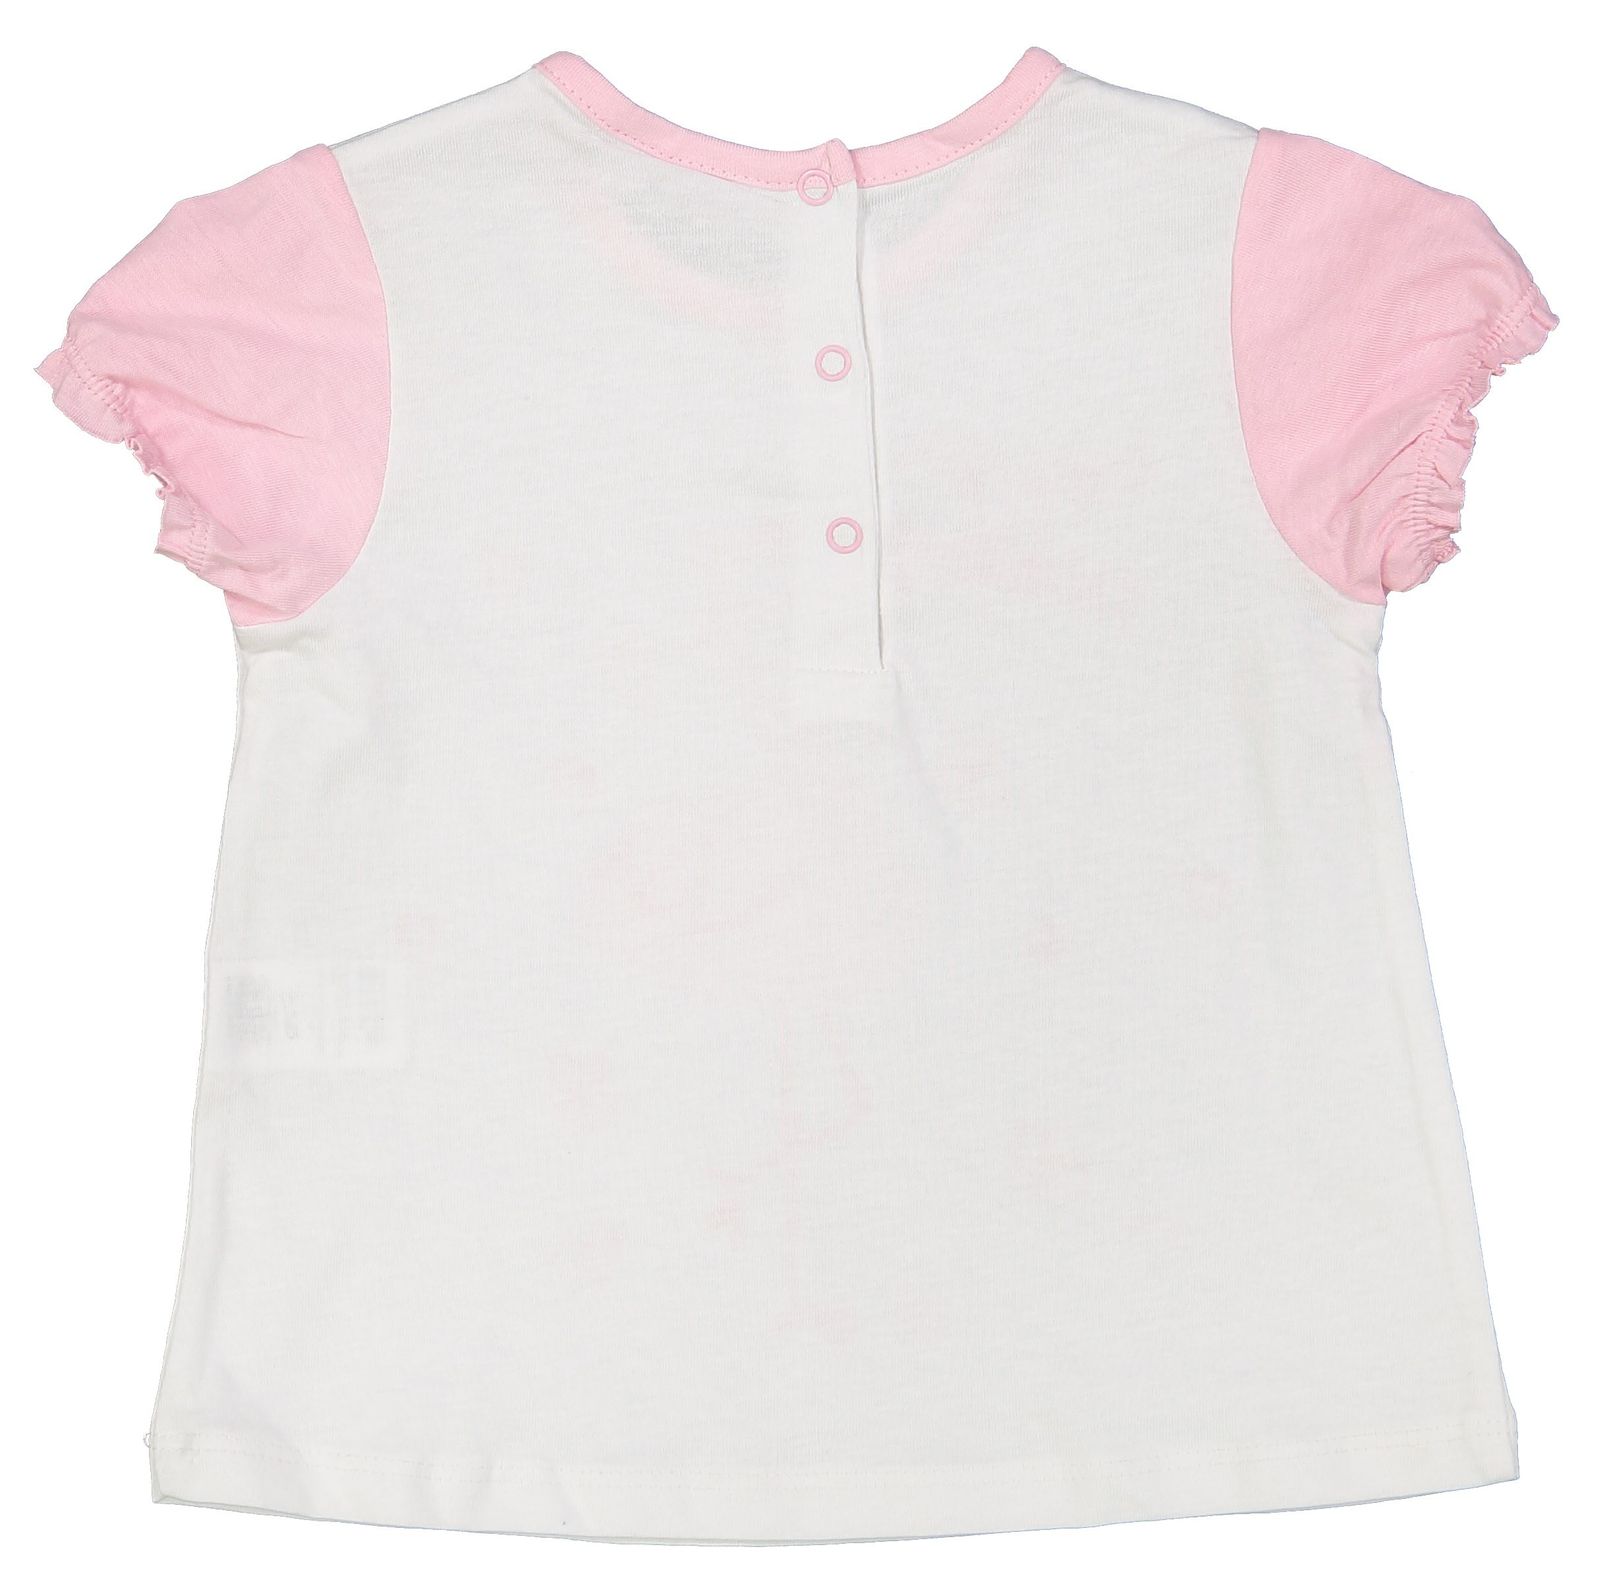 تی شرت و شلوارک نخی نوزادی دخترانه بسته 2 عددی - بلوکیدز - صورتي روشن و سفيد - 6